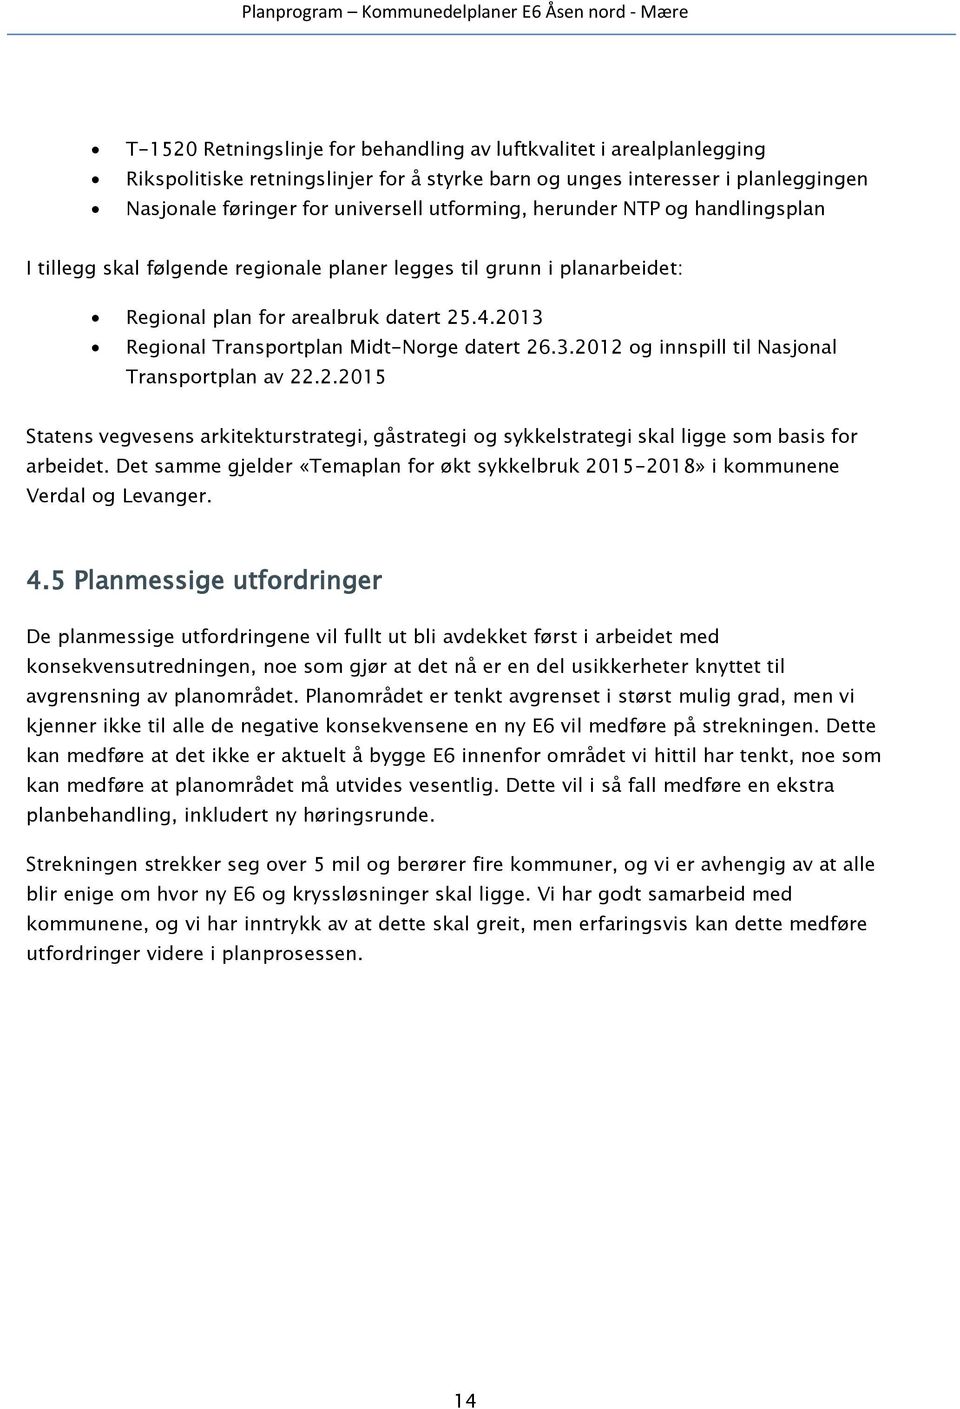 2.2015 Statens vegvesens arkitekturstrategi, gåstrategi og sykkelstrategi skal ligge som basis for arbeidet. Det samme gjelder «Temaplan for økt sykkelbruk 2015-2018» i kommunene Verdal og Levanger.